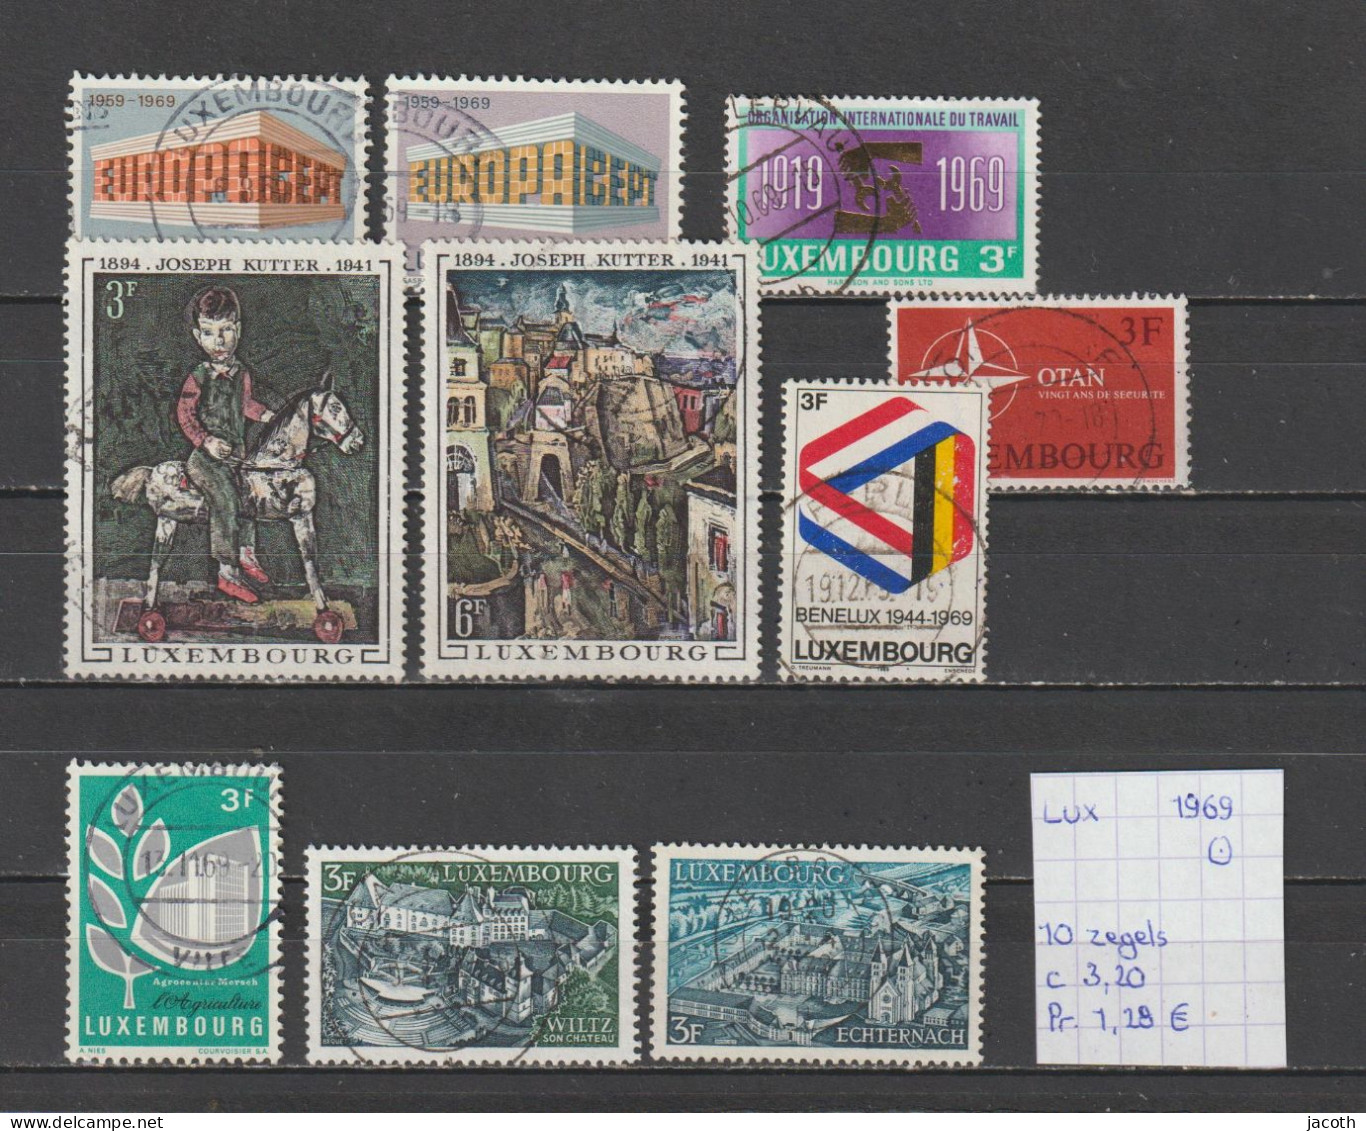 (TJ) Luxembourg 1969 - 10 Zegels (gest./obl./used) - Gebruikt